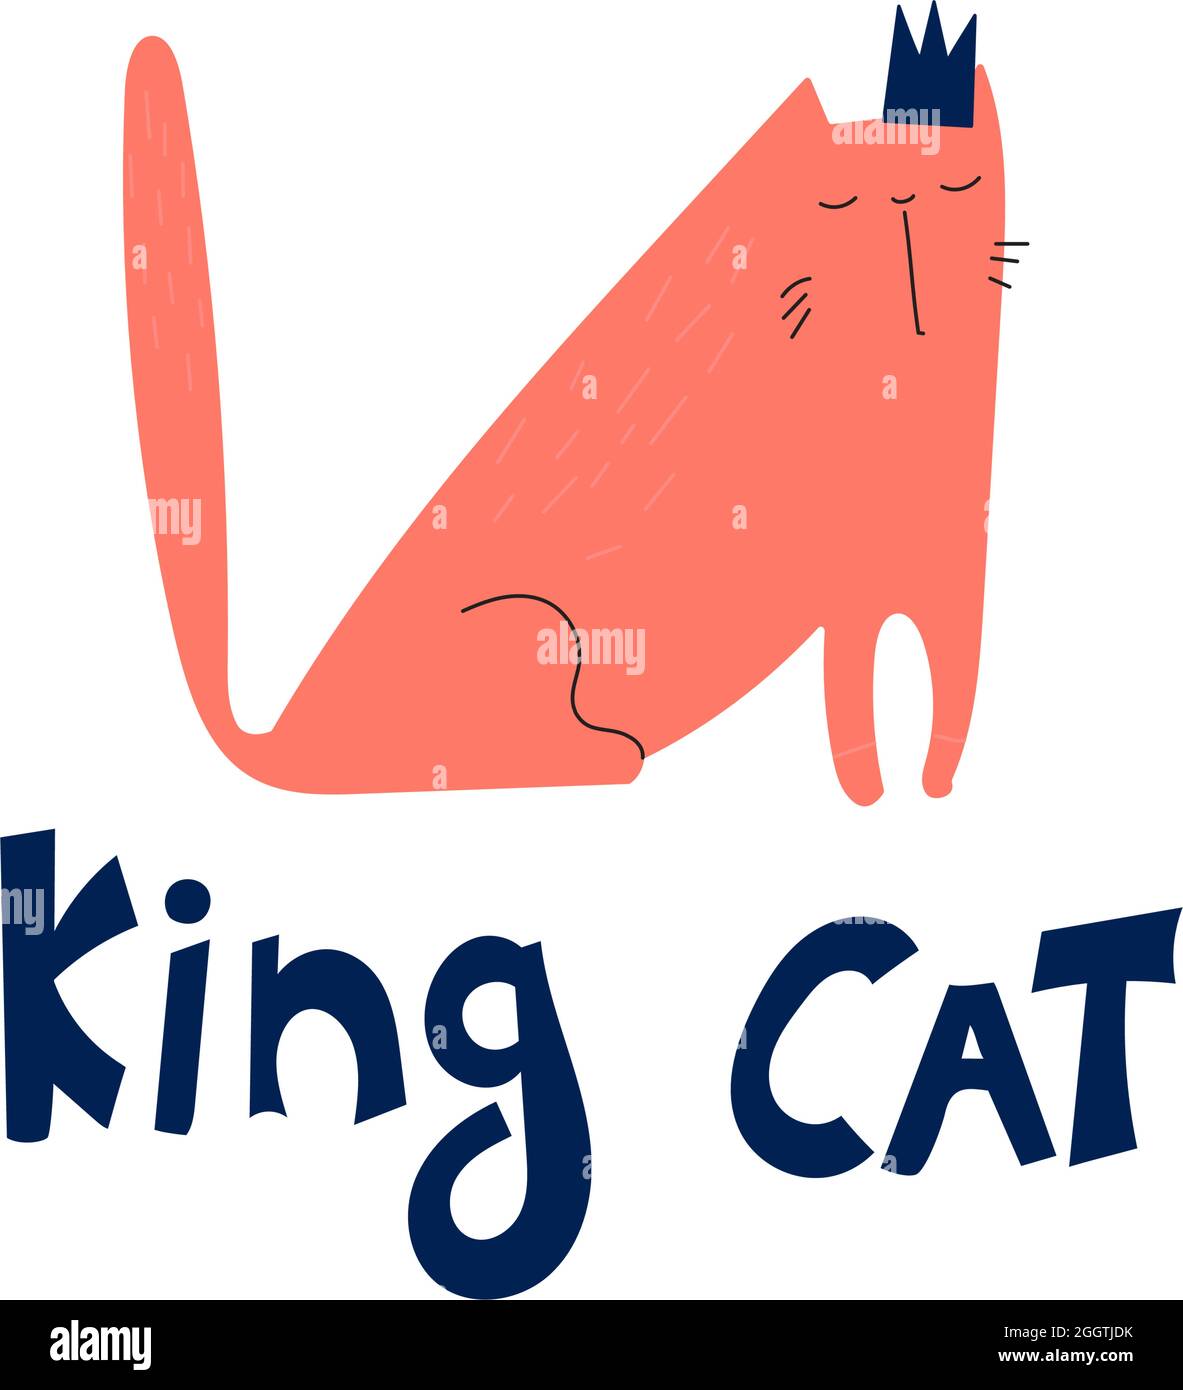 Drôle d'affiche tirée à la main graisse rouge chat dans la couronne. Vecteur enfants illustration doodle King chat pour l'impression, textile, autocollants, affiches, cartes, tee-shirts. Lettrage bleu foncé. Illustration de Vecteur